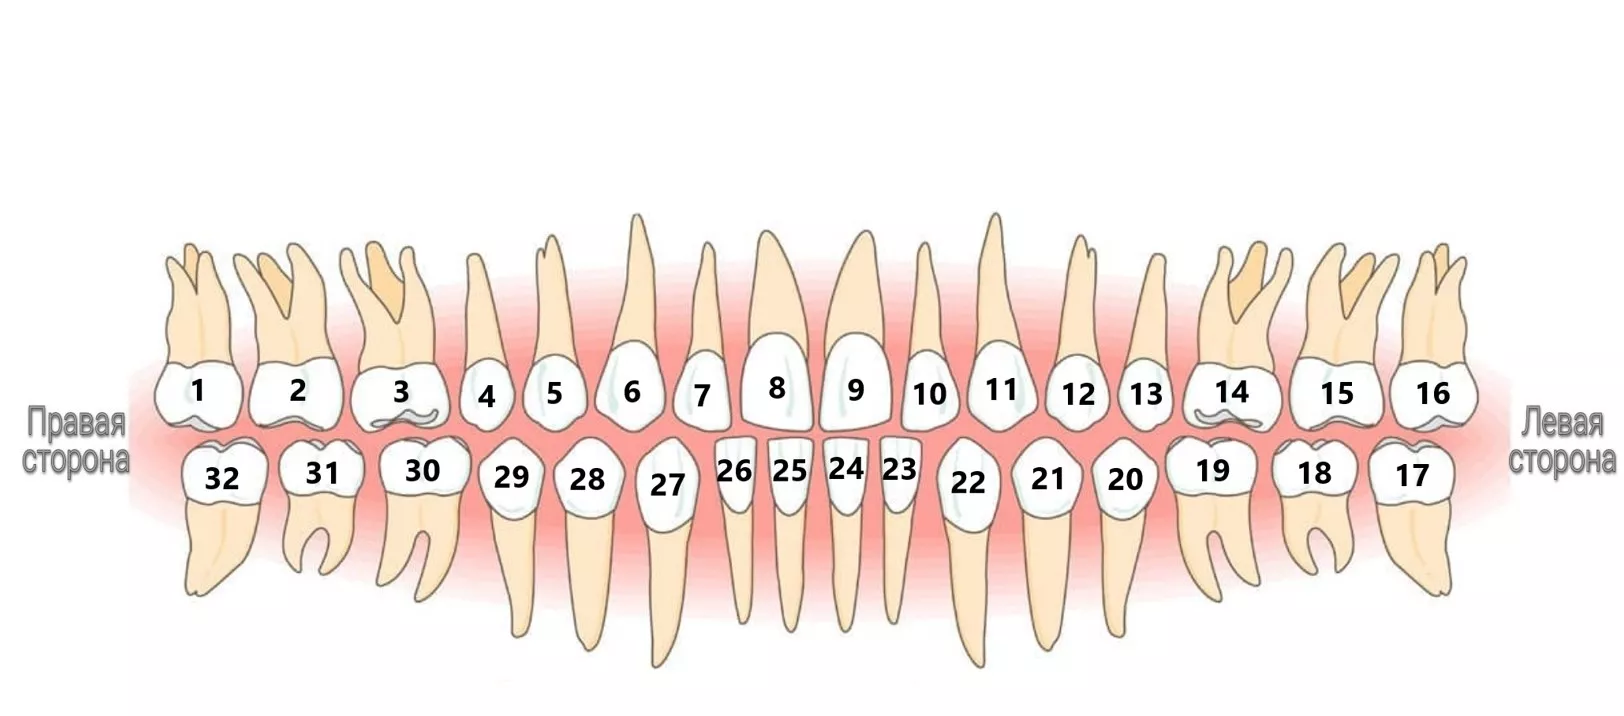 Пересчитаем зубы? Раскрываем профессиональный шифр стоматологов